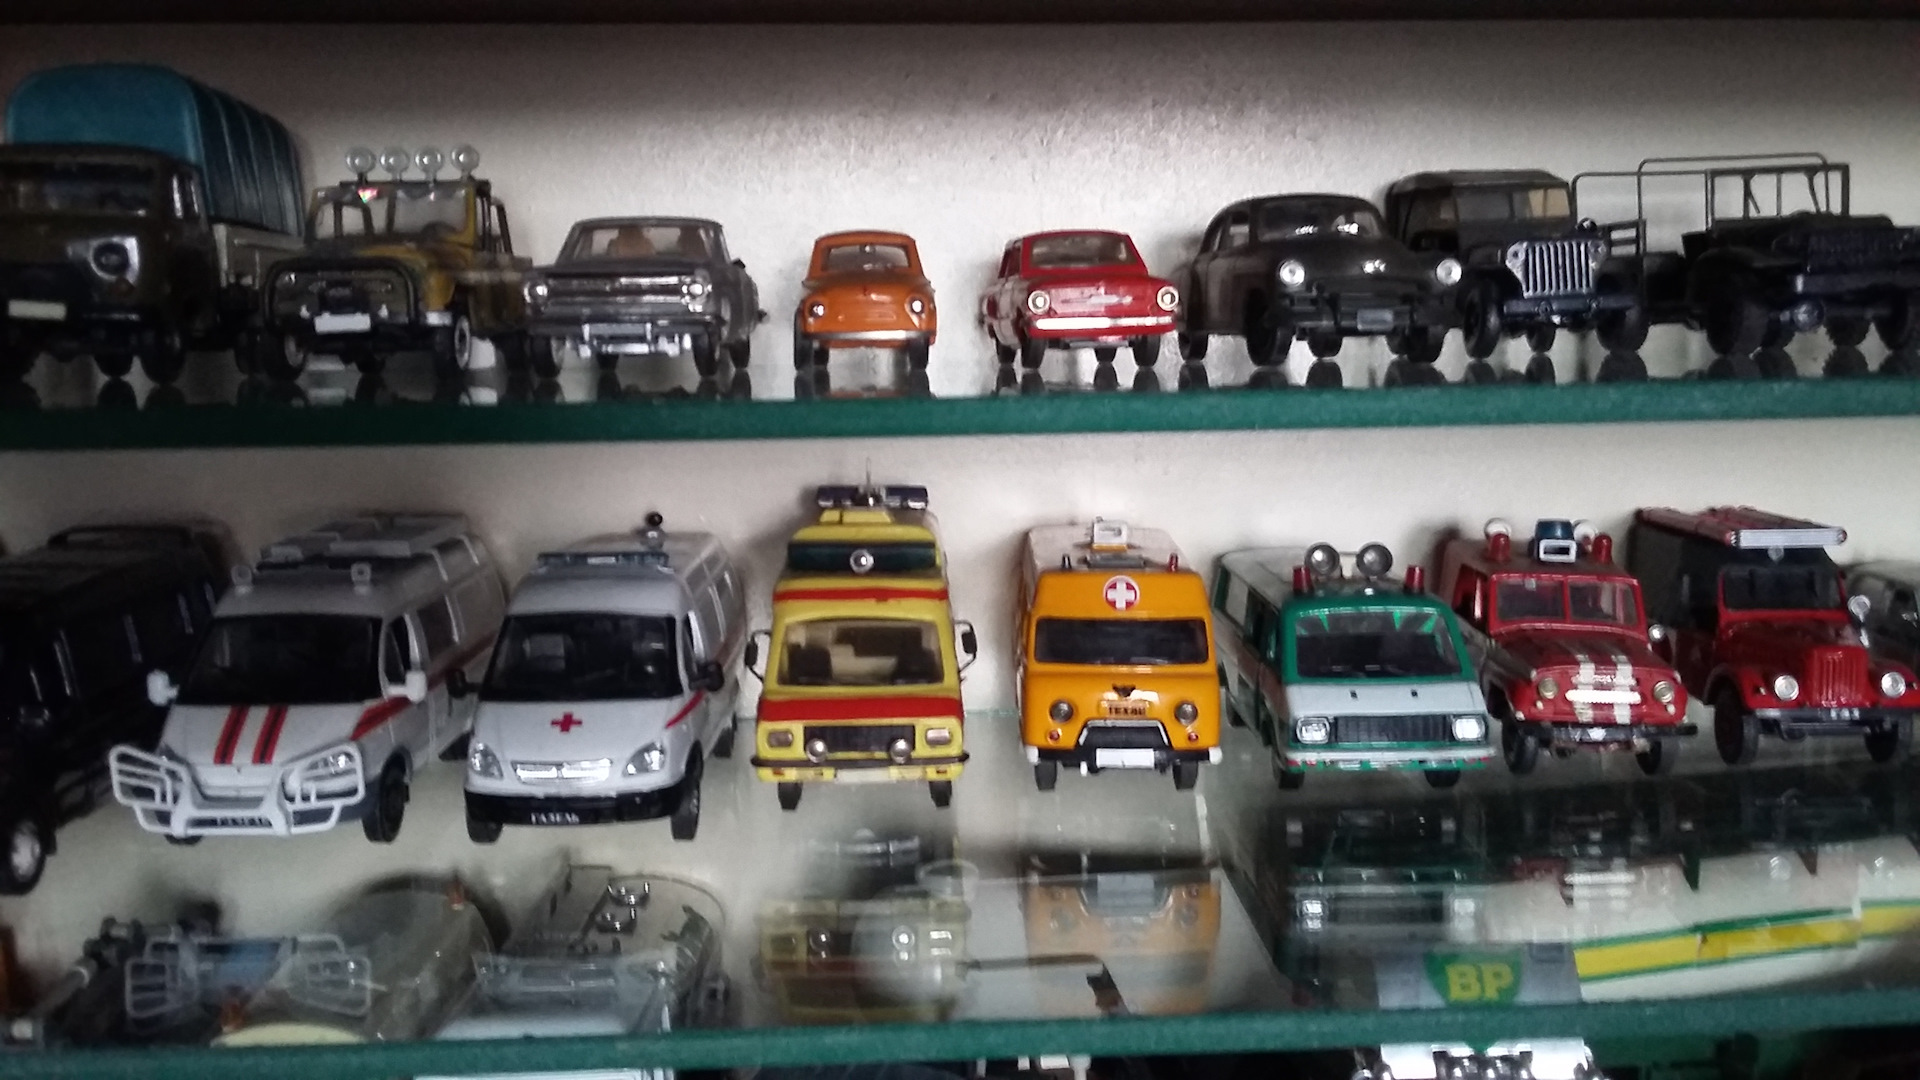 1 43 collection. Коллекция автомобилей. Игрушки машинки коллекционные. Коллекция моделек машин. Автоистория коллекционные машинки.